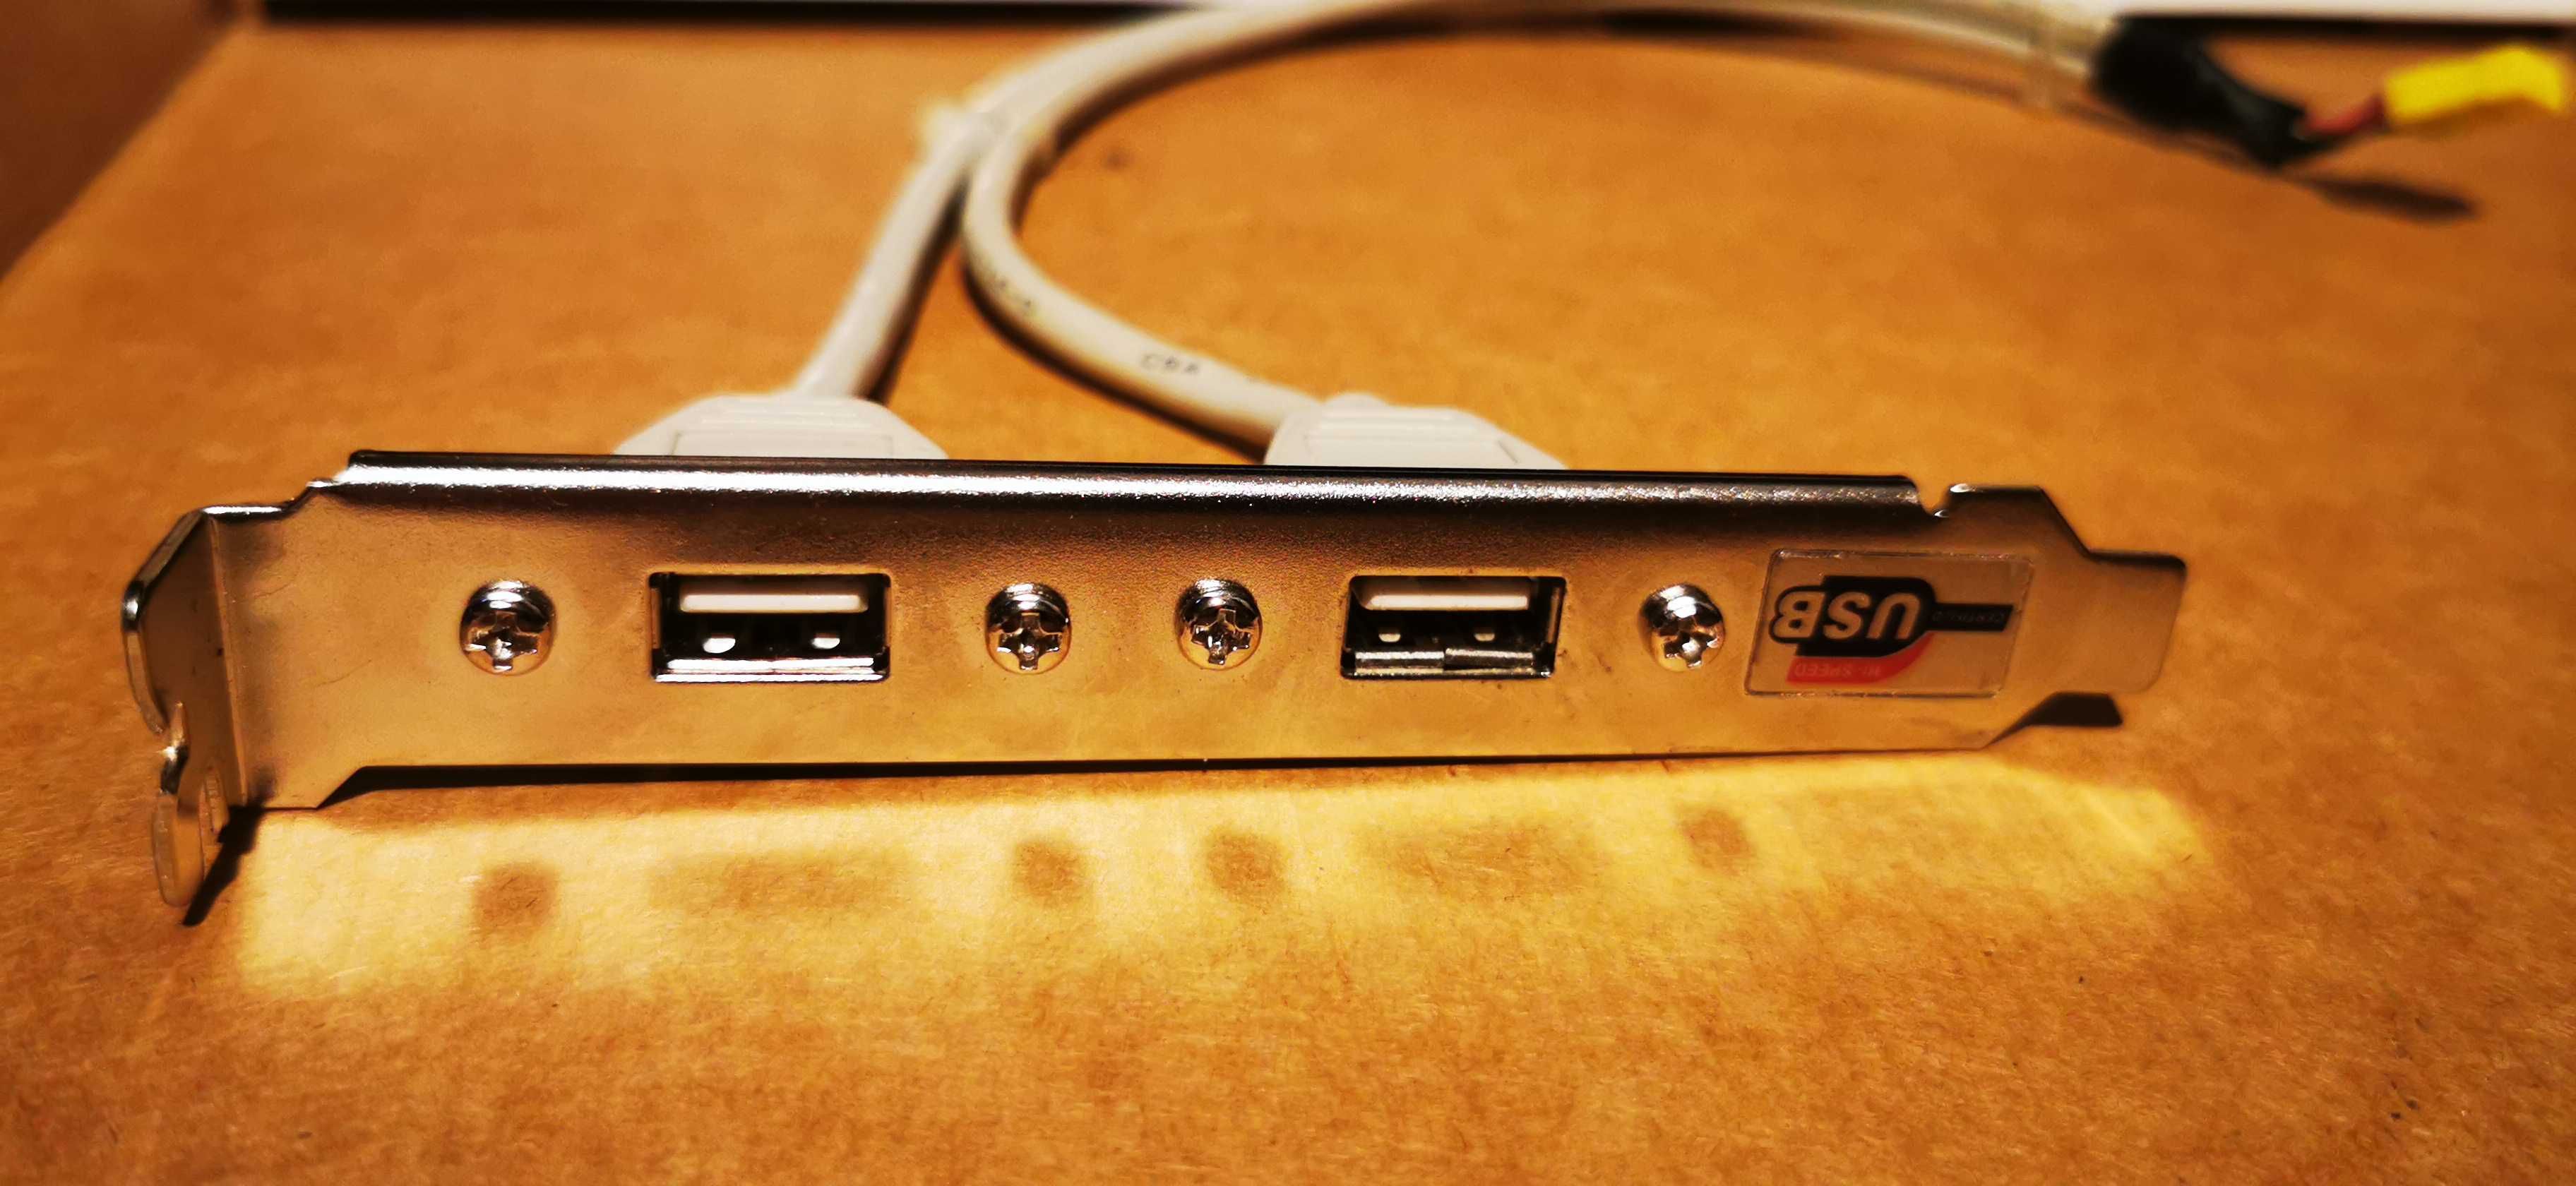 4 Placi adaptoare externe cu 2 porturi USB pentru sistem Desktop